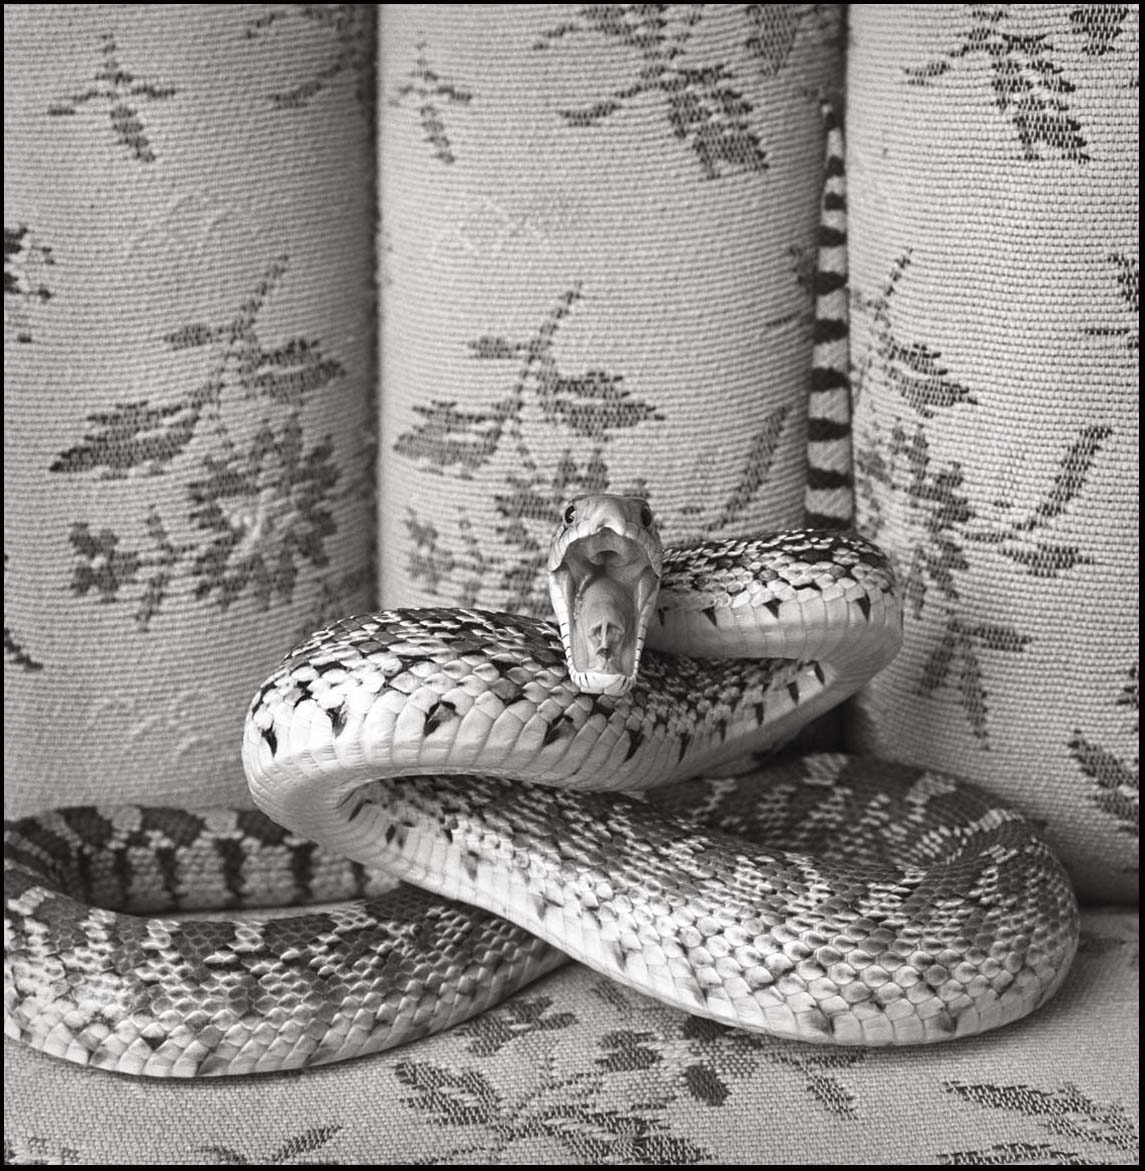 Bull Snake on Sofa_Hissing_© James H. Evans